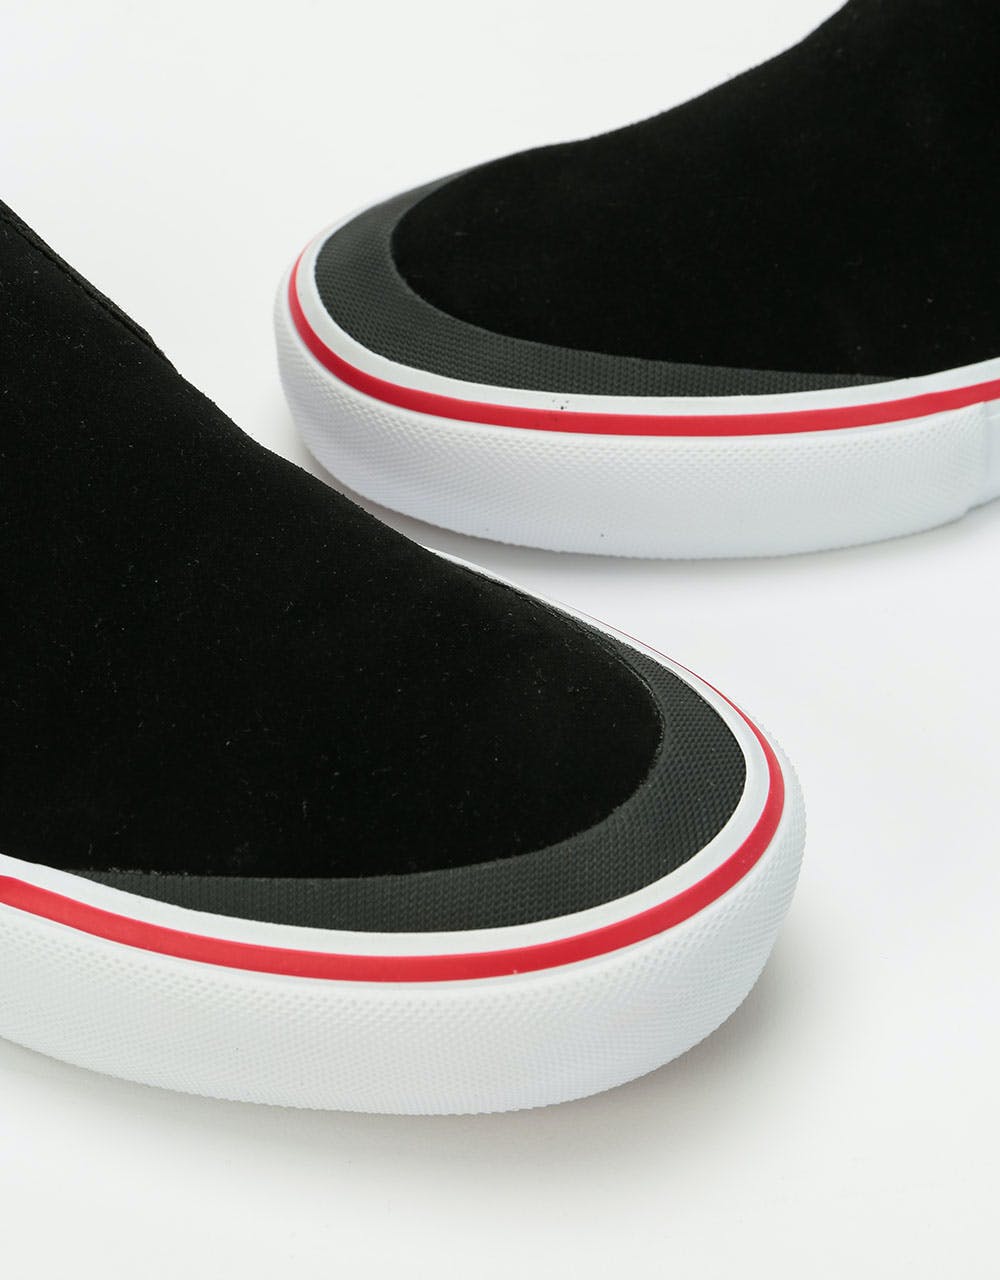 Vans Slip-On Pro Skate Shoes - (Baker) Rowan/Speed Check